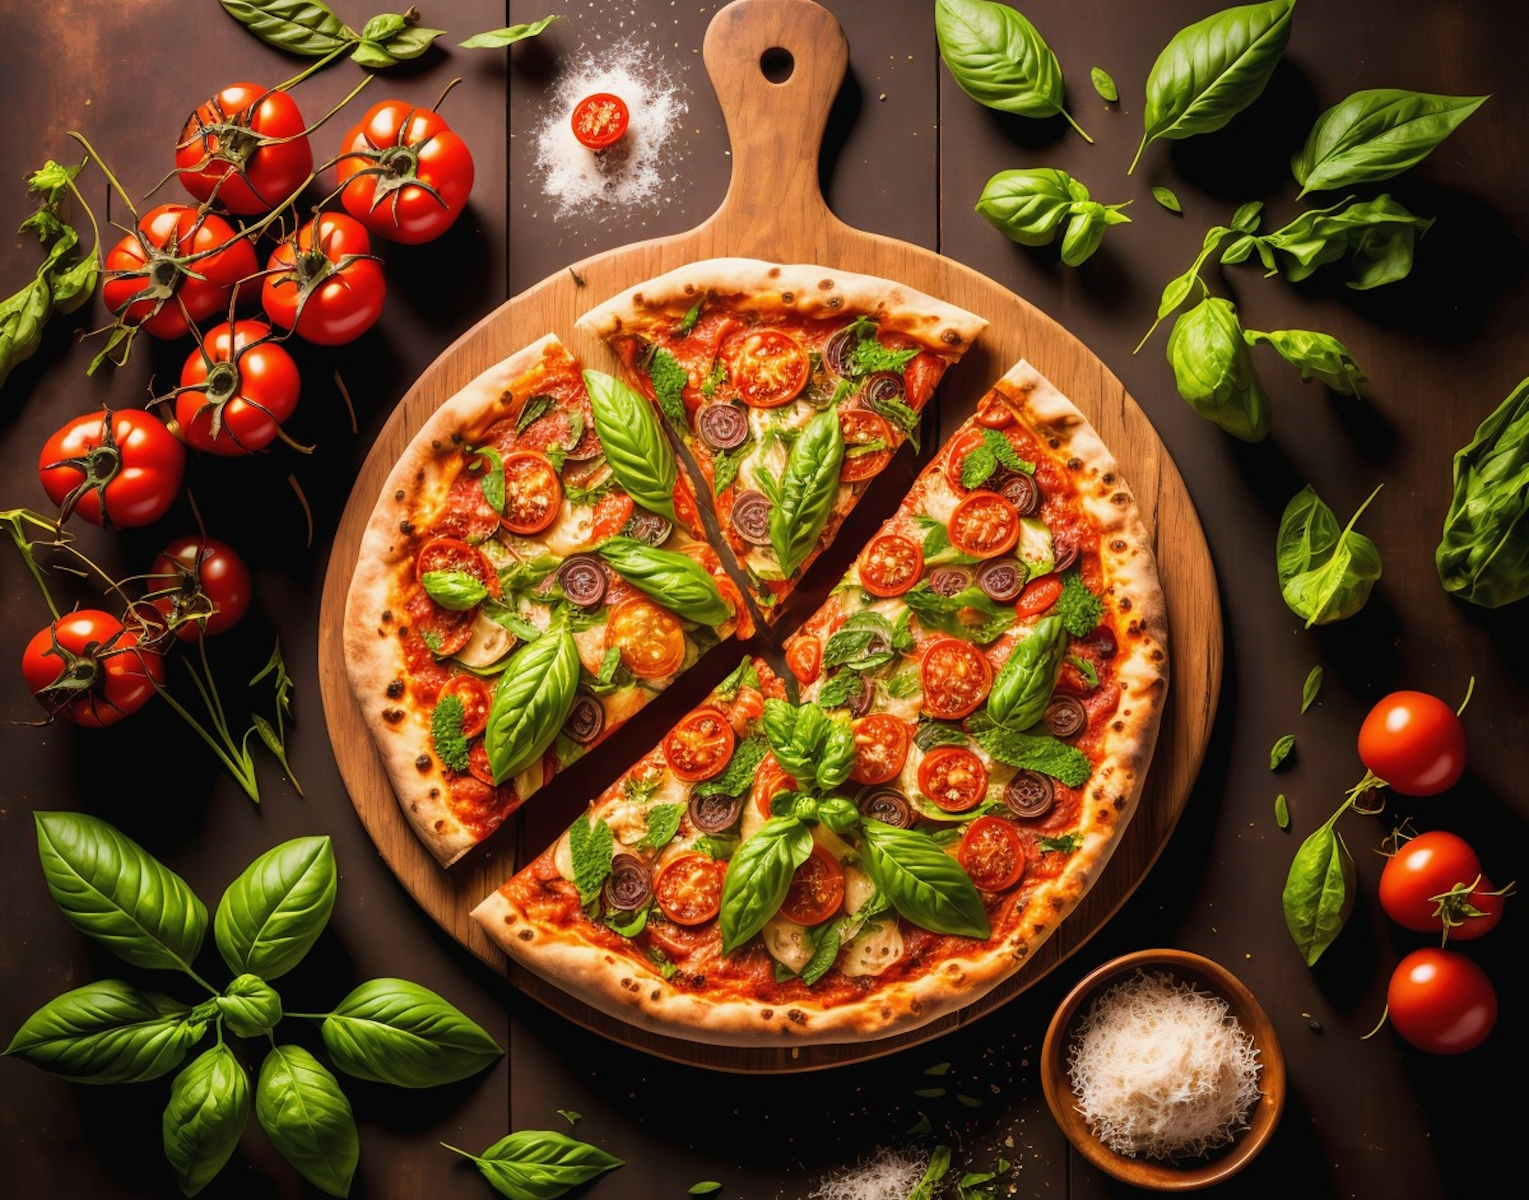 правильная начинка для пиццы по итальянскому рецепту фото 15